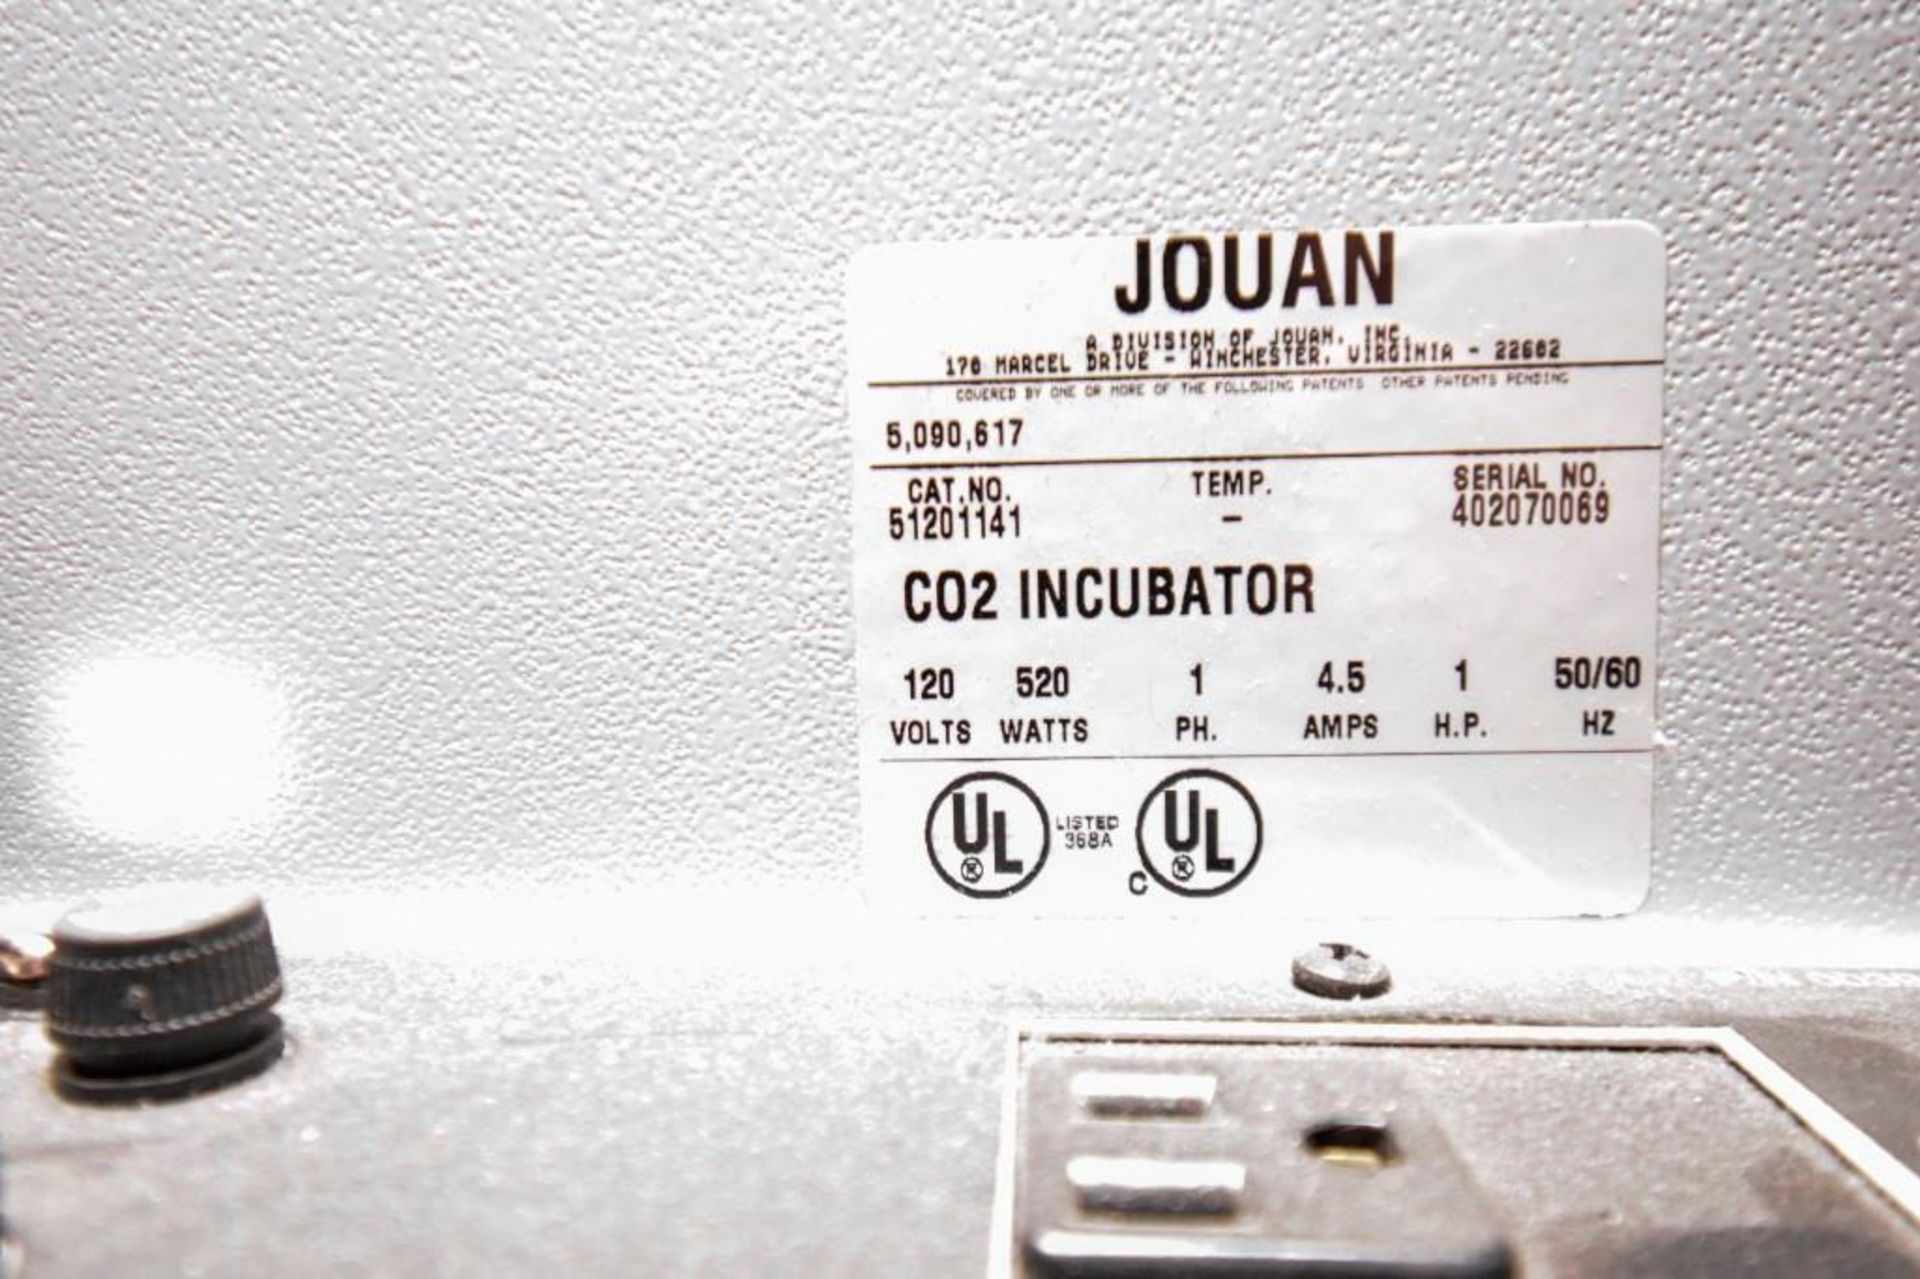 Jouan C02 Incubator IG 050 - Image 4 of 4